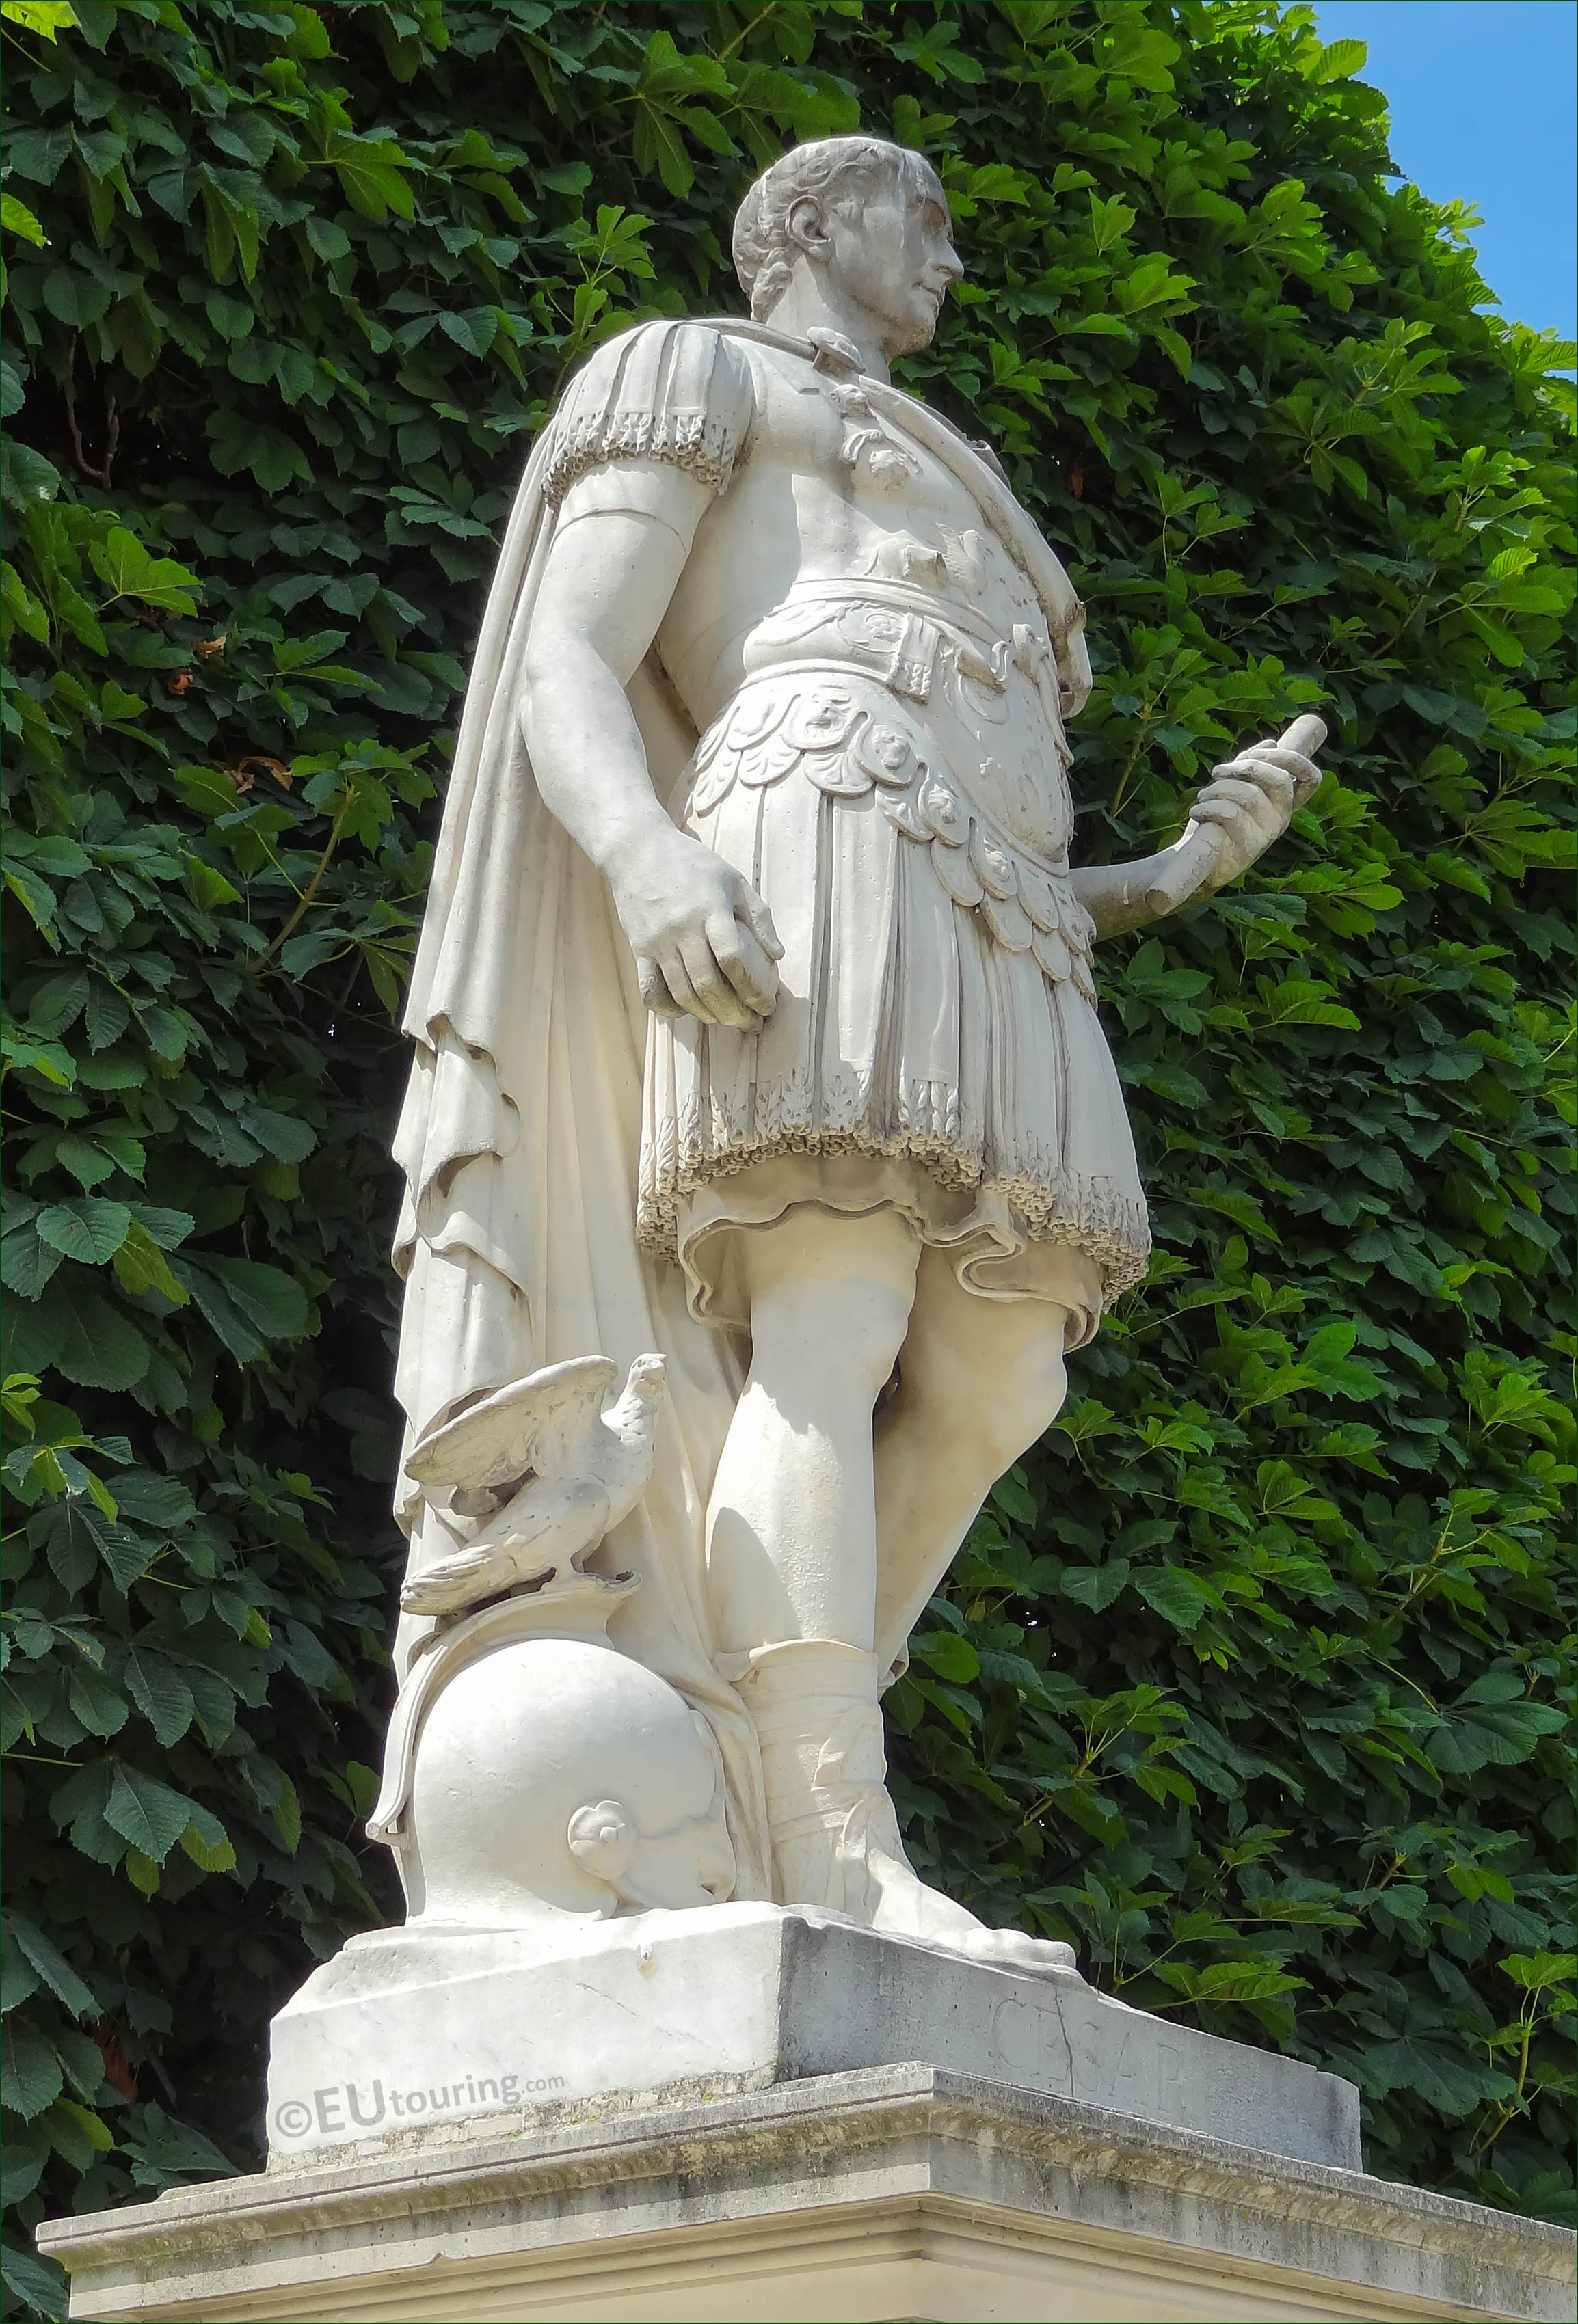 Photos of Julius Caesar statue in Jardin des Tuileries ...